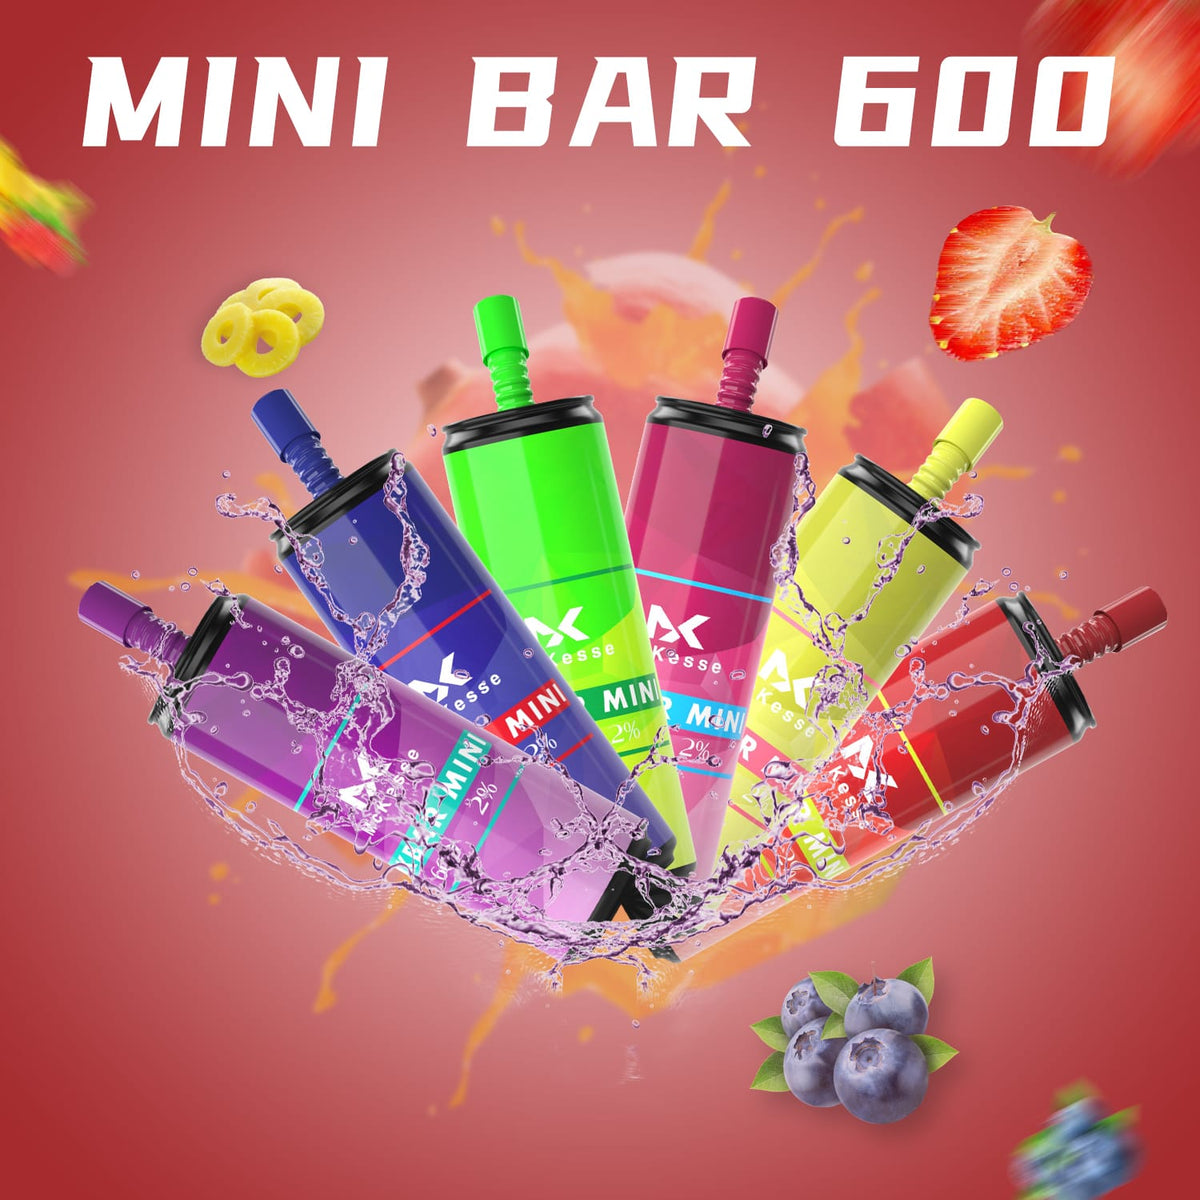 Mk Mini Bar 600 Puffs Disposable Vape Pod Box of 10 - Bulk Vape Wholesale